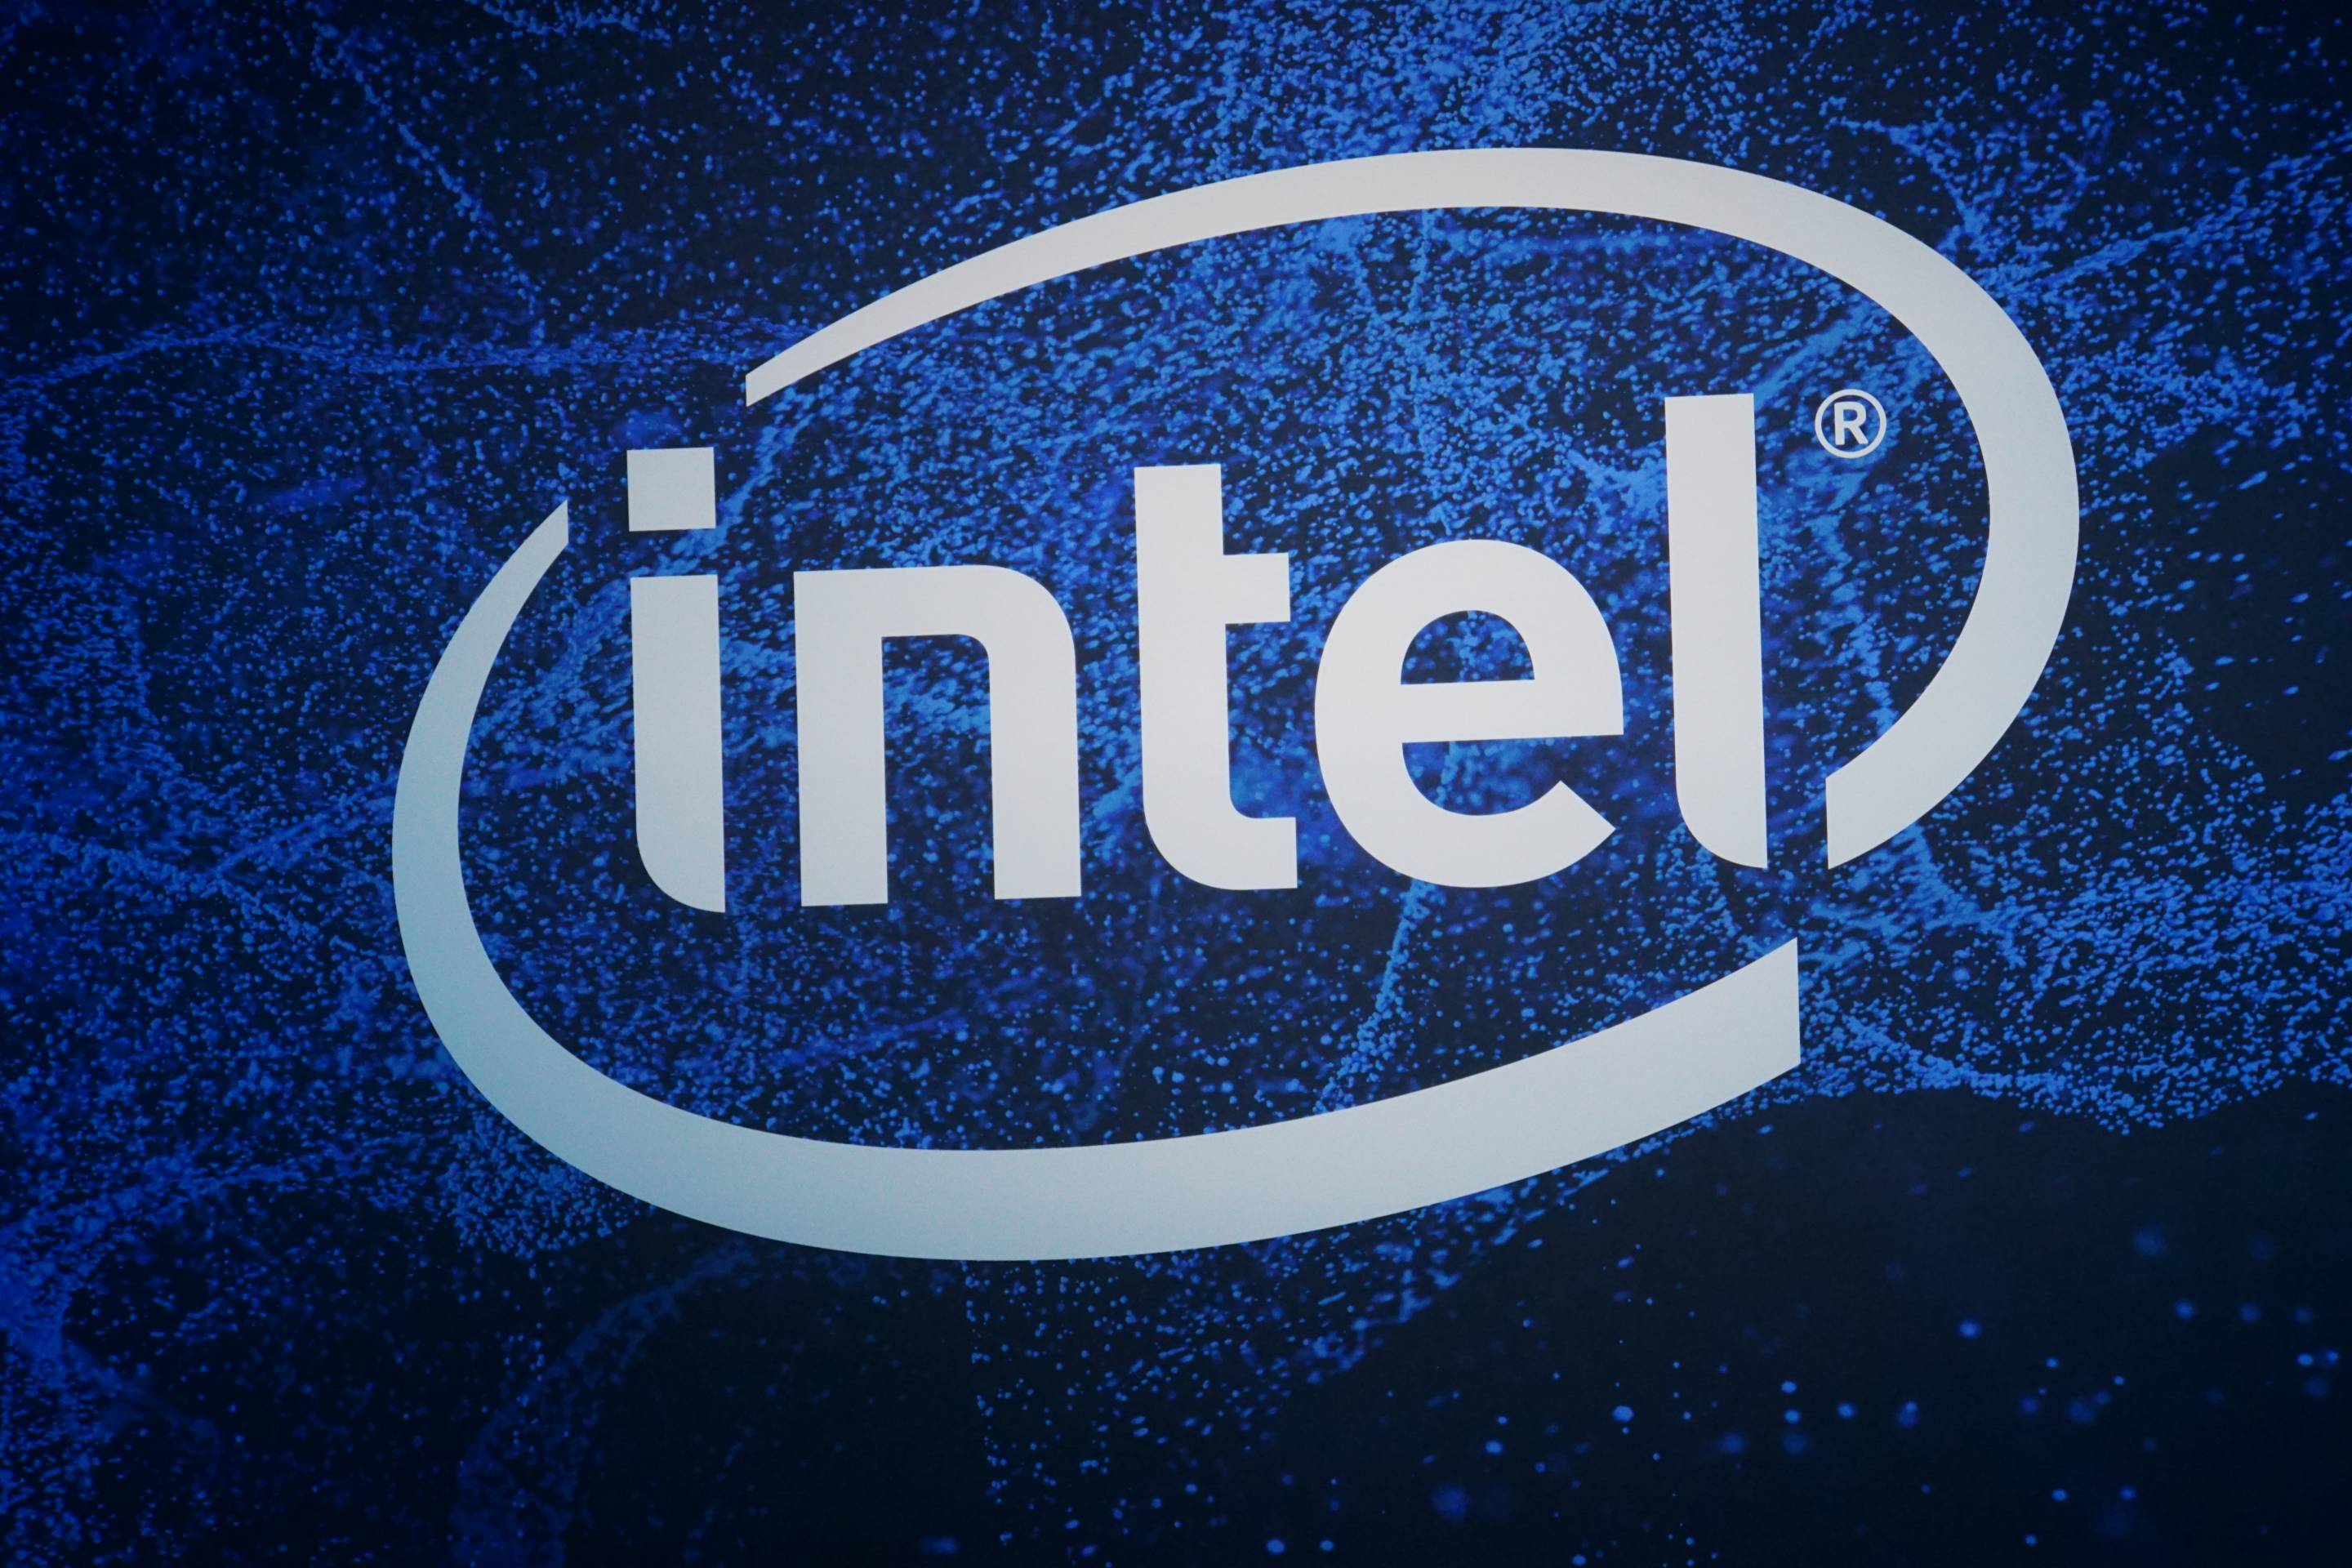 Mystery Intel 11ª geração Rocket Lake-S atinge velocidades de clock de aumento de 5,0 GHz indica novos benchmarks vazados